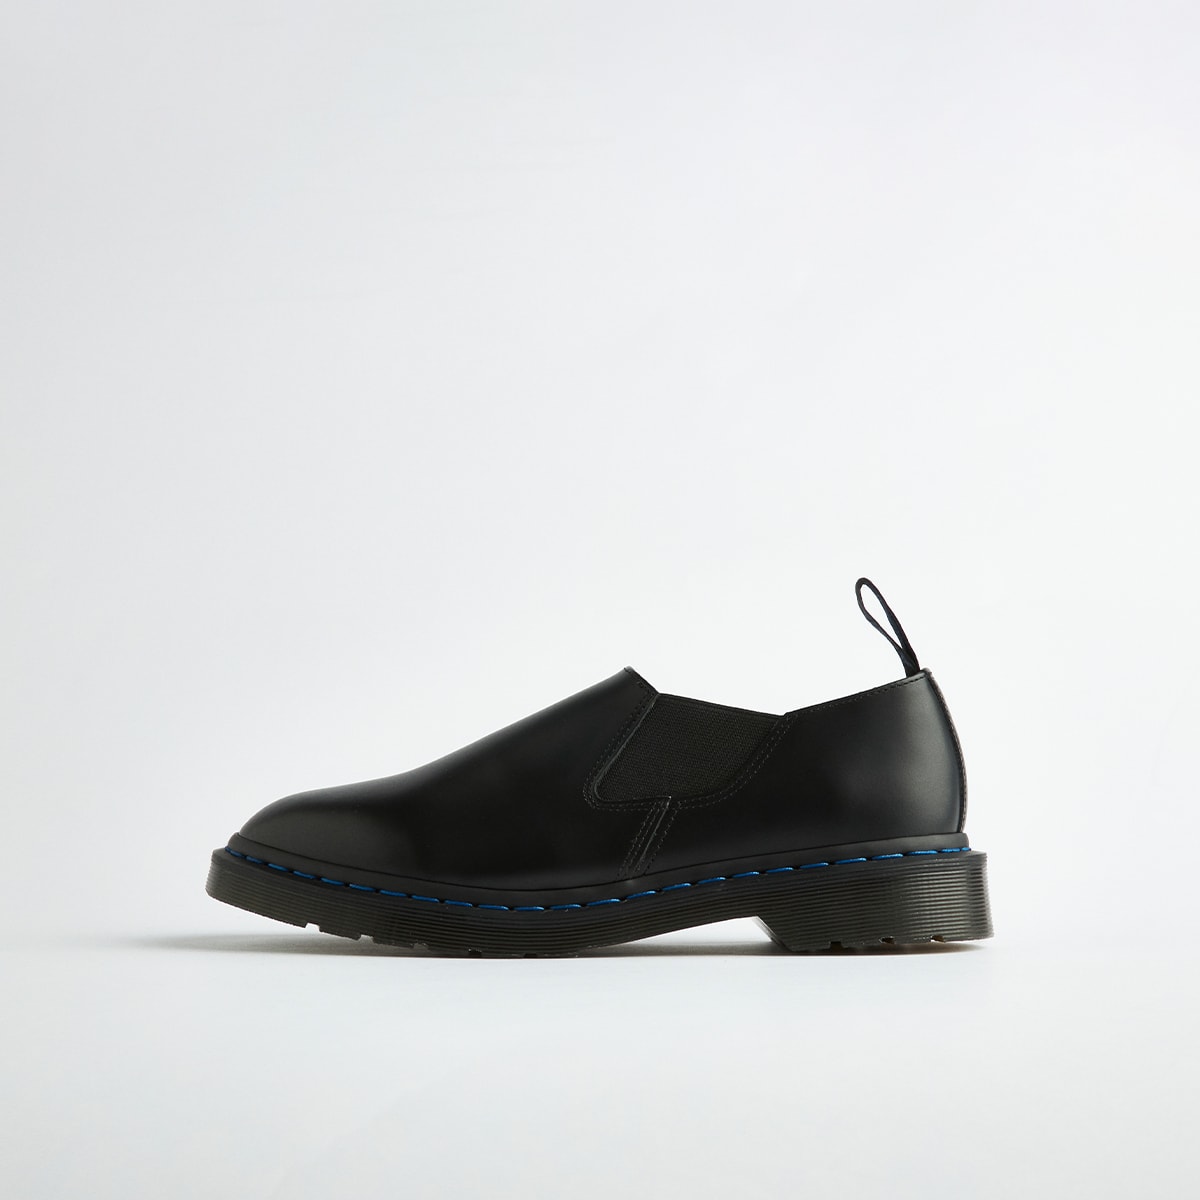 Dr. Martens' Chelsea Boots, Louis Slip-On Receive Subtle Nanamica